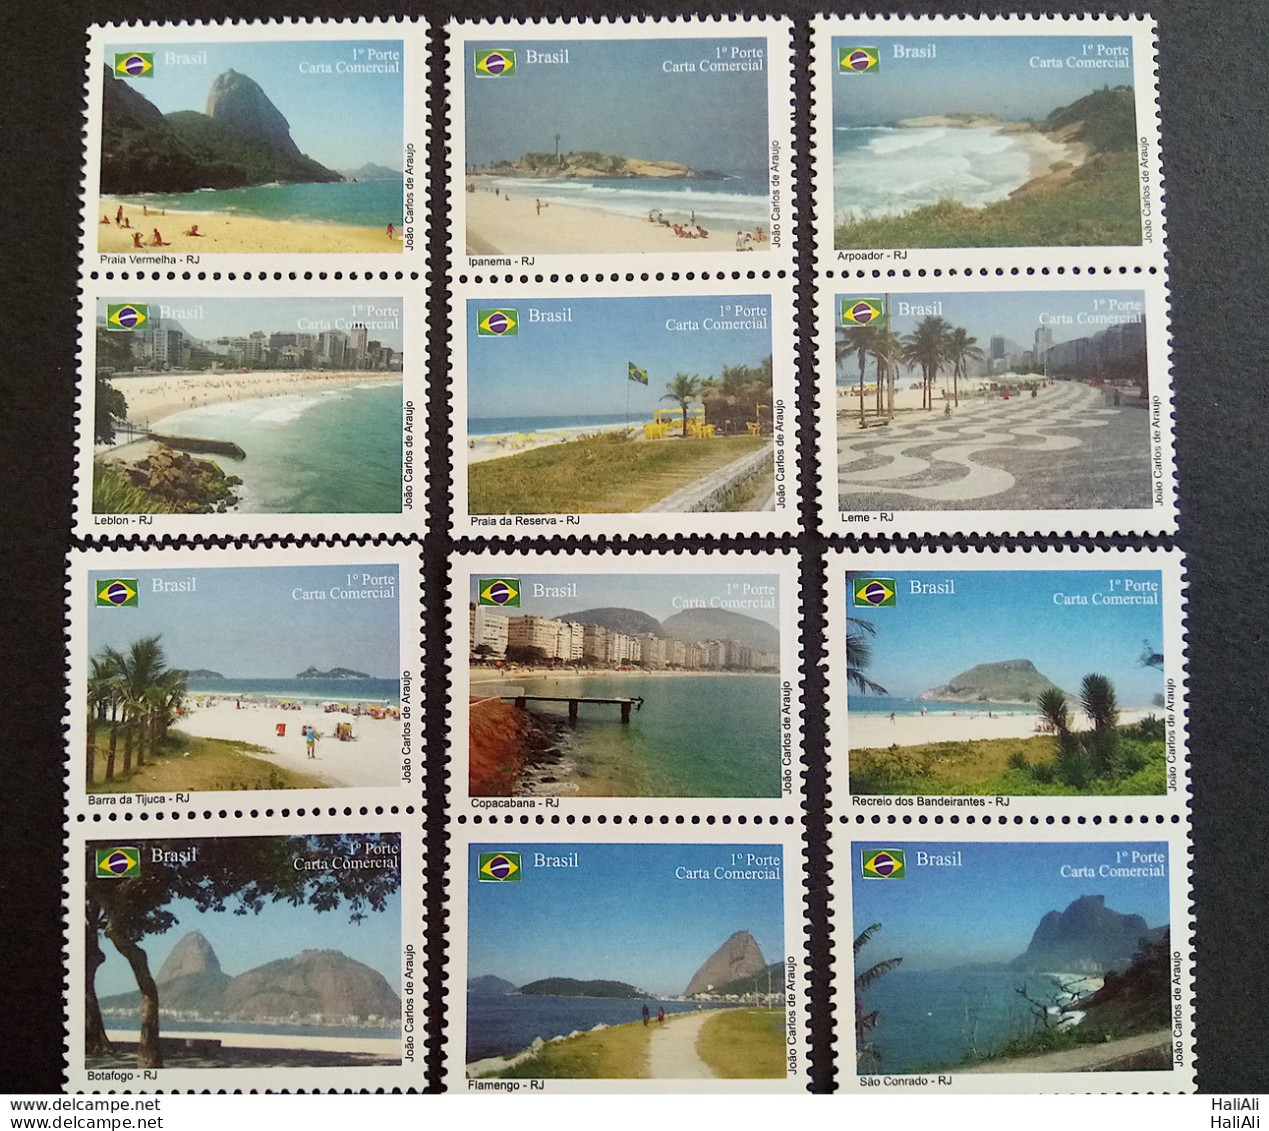 C 2927 Brazil Depersonalized Stamp Tourism Rio De Janeiro Cariocas Beach 2009 Complete Series - Personalizzati